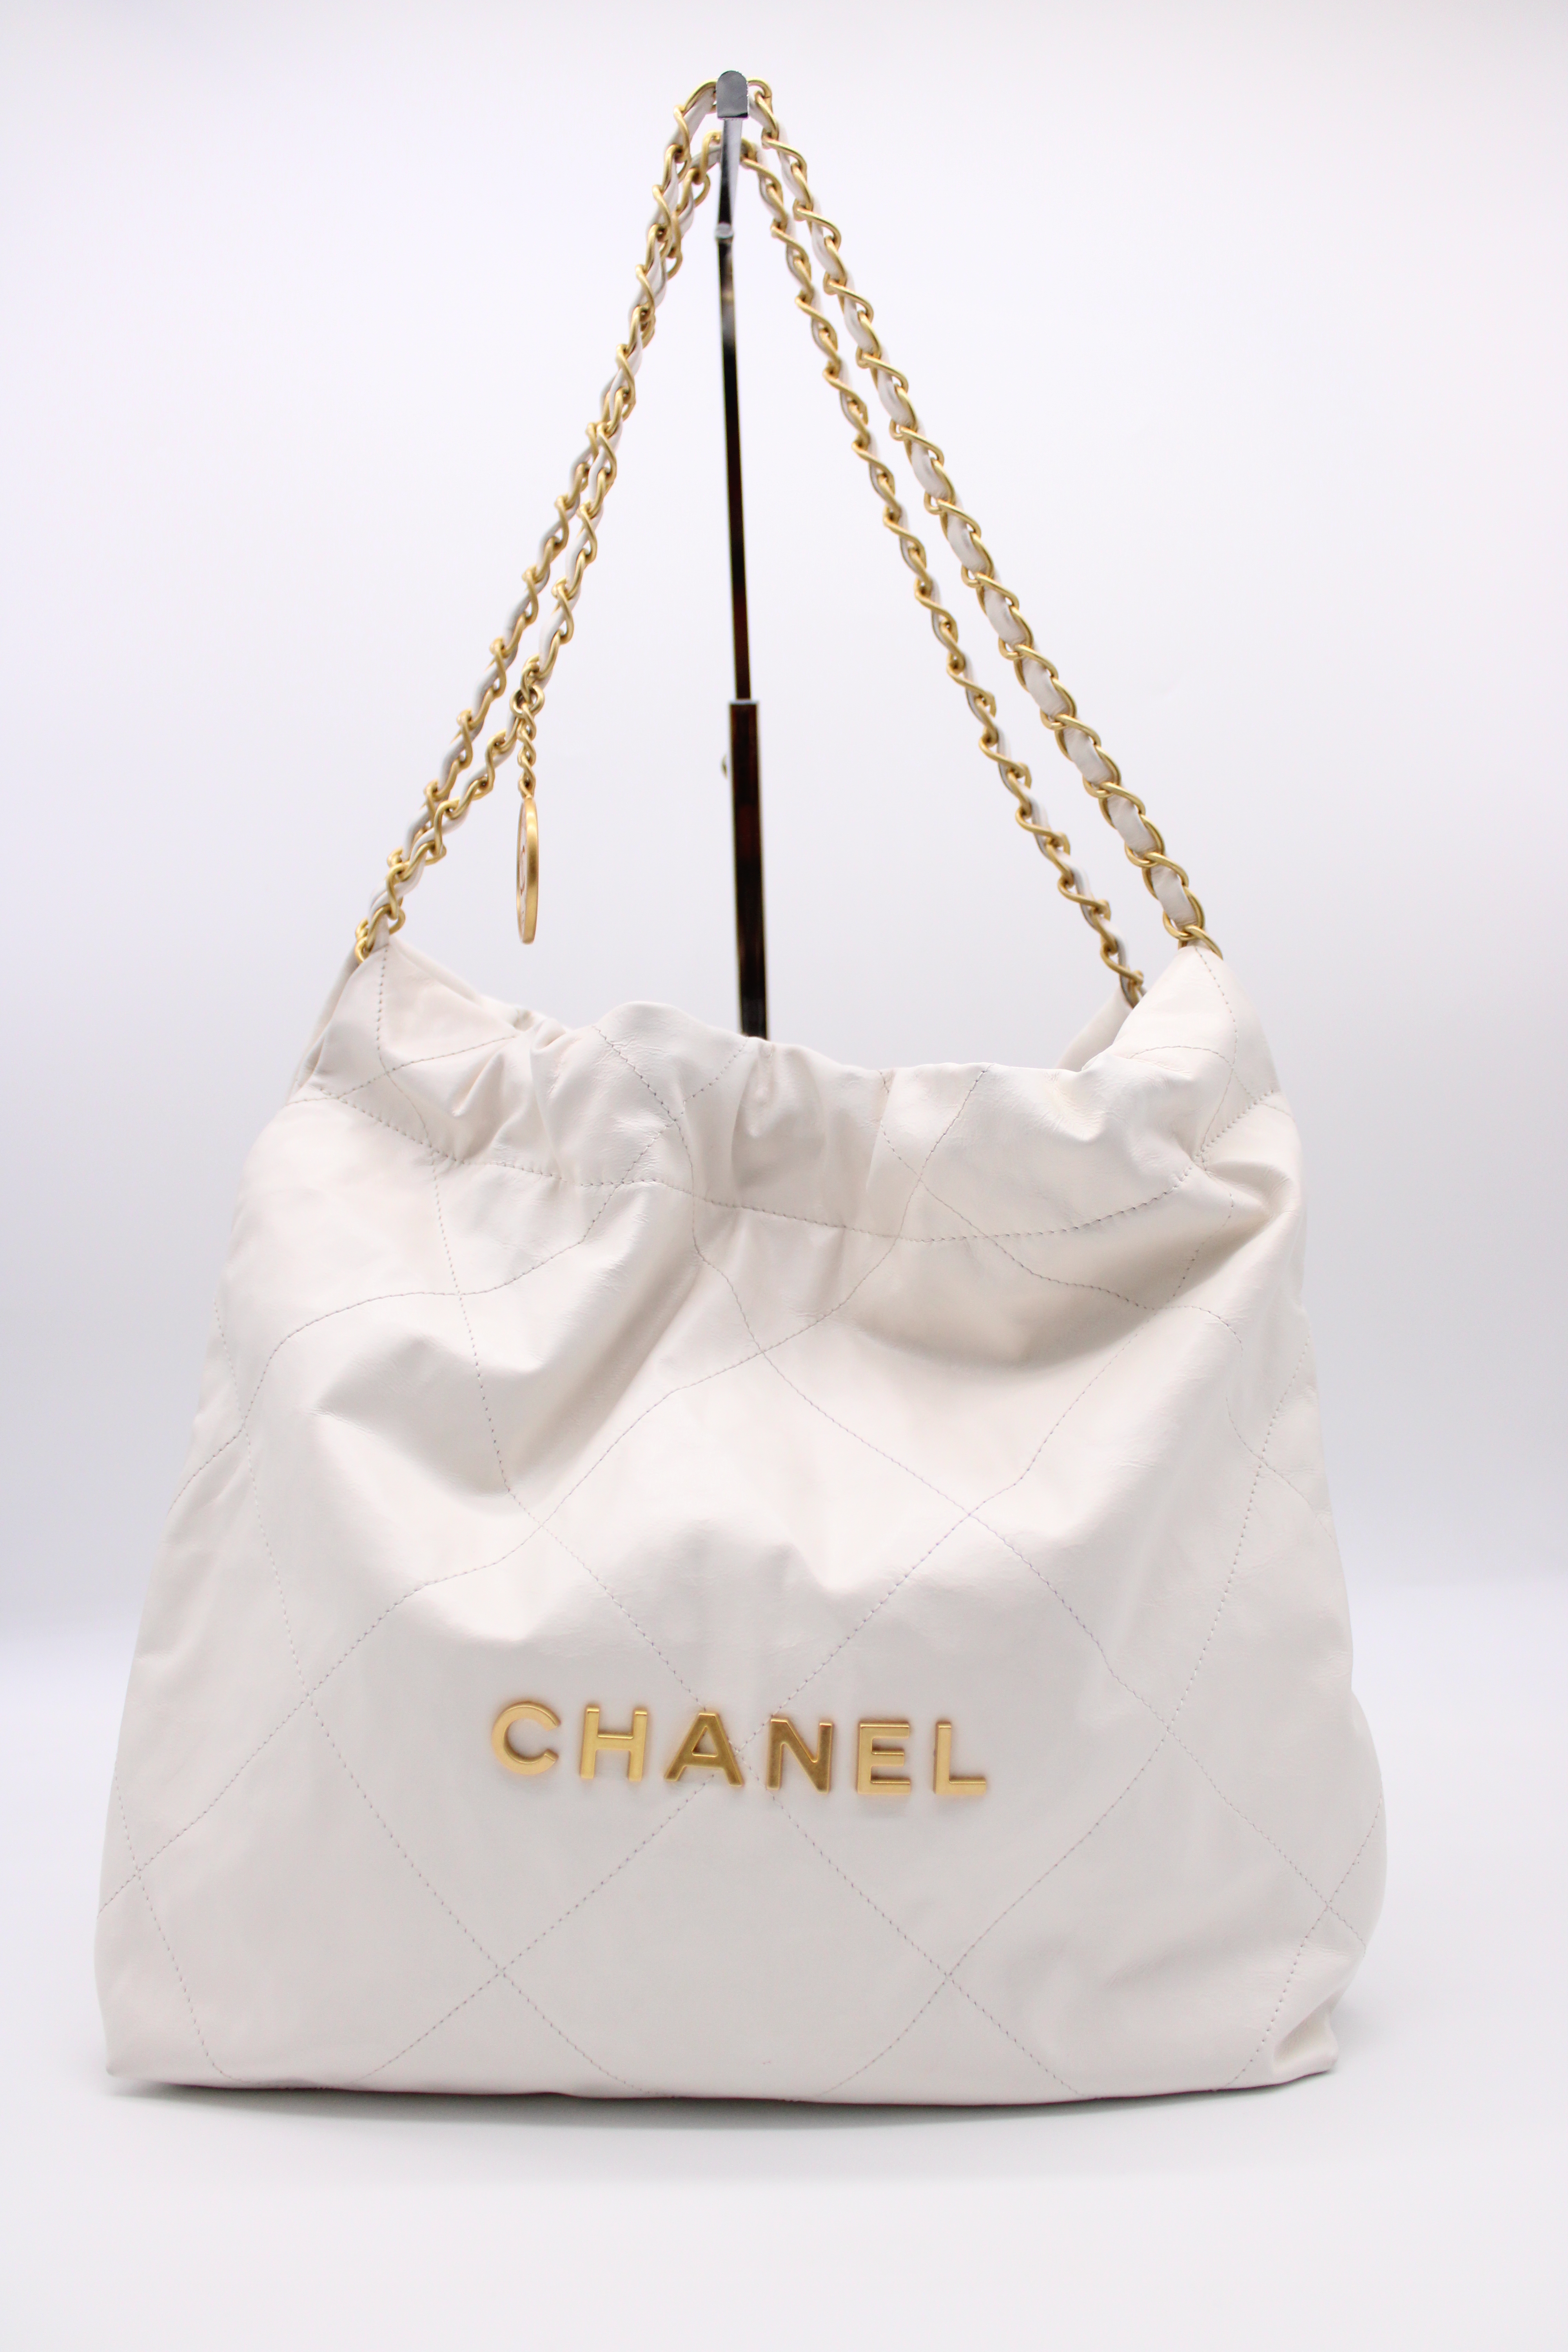 crystal chanel bag